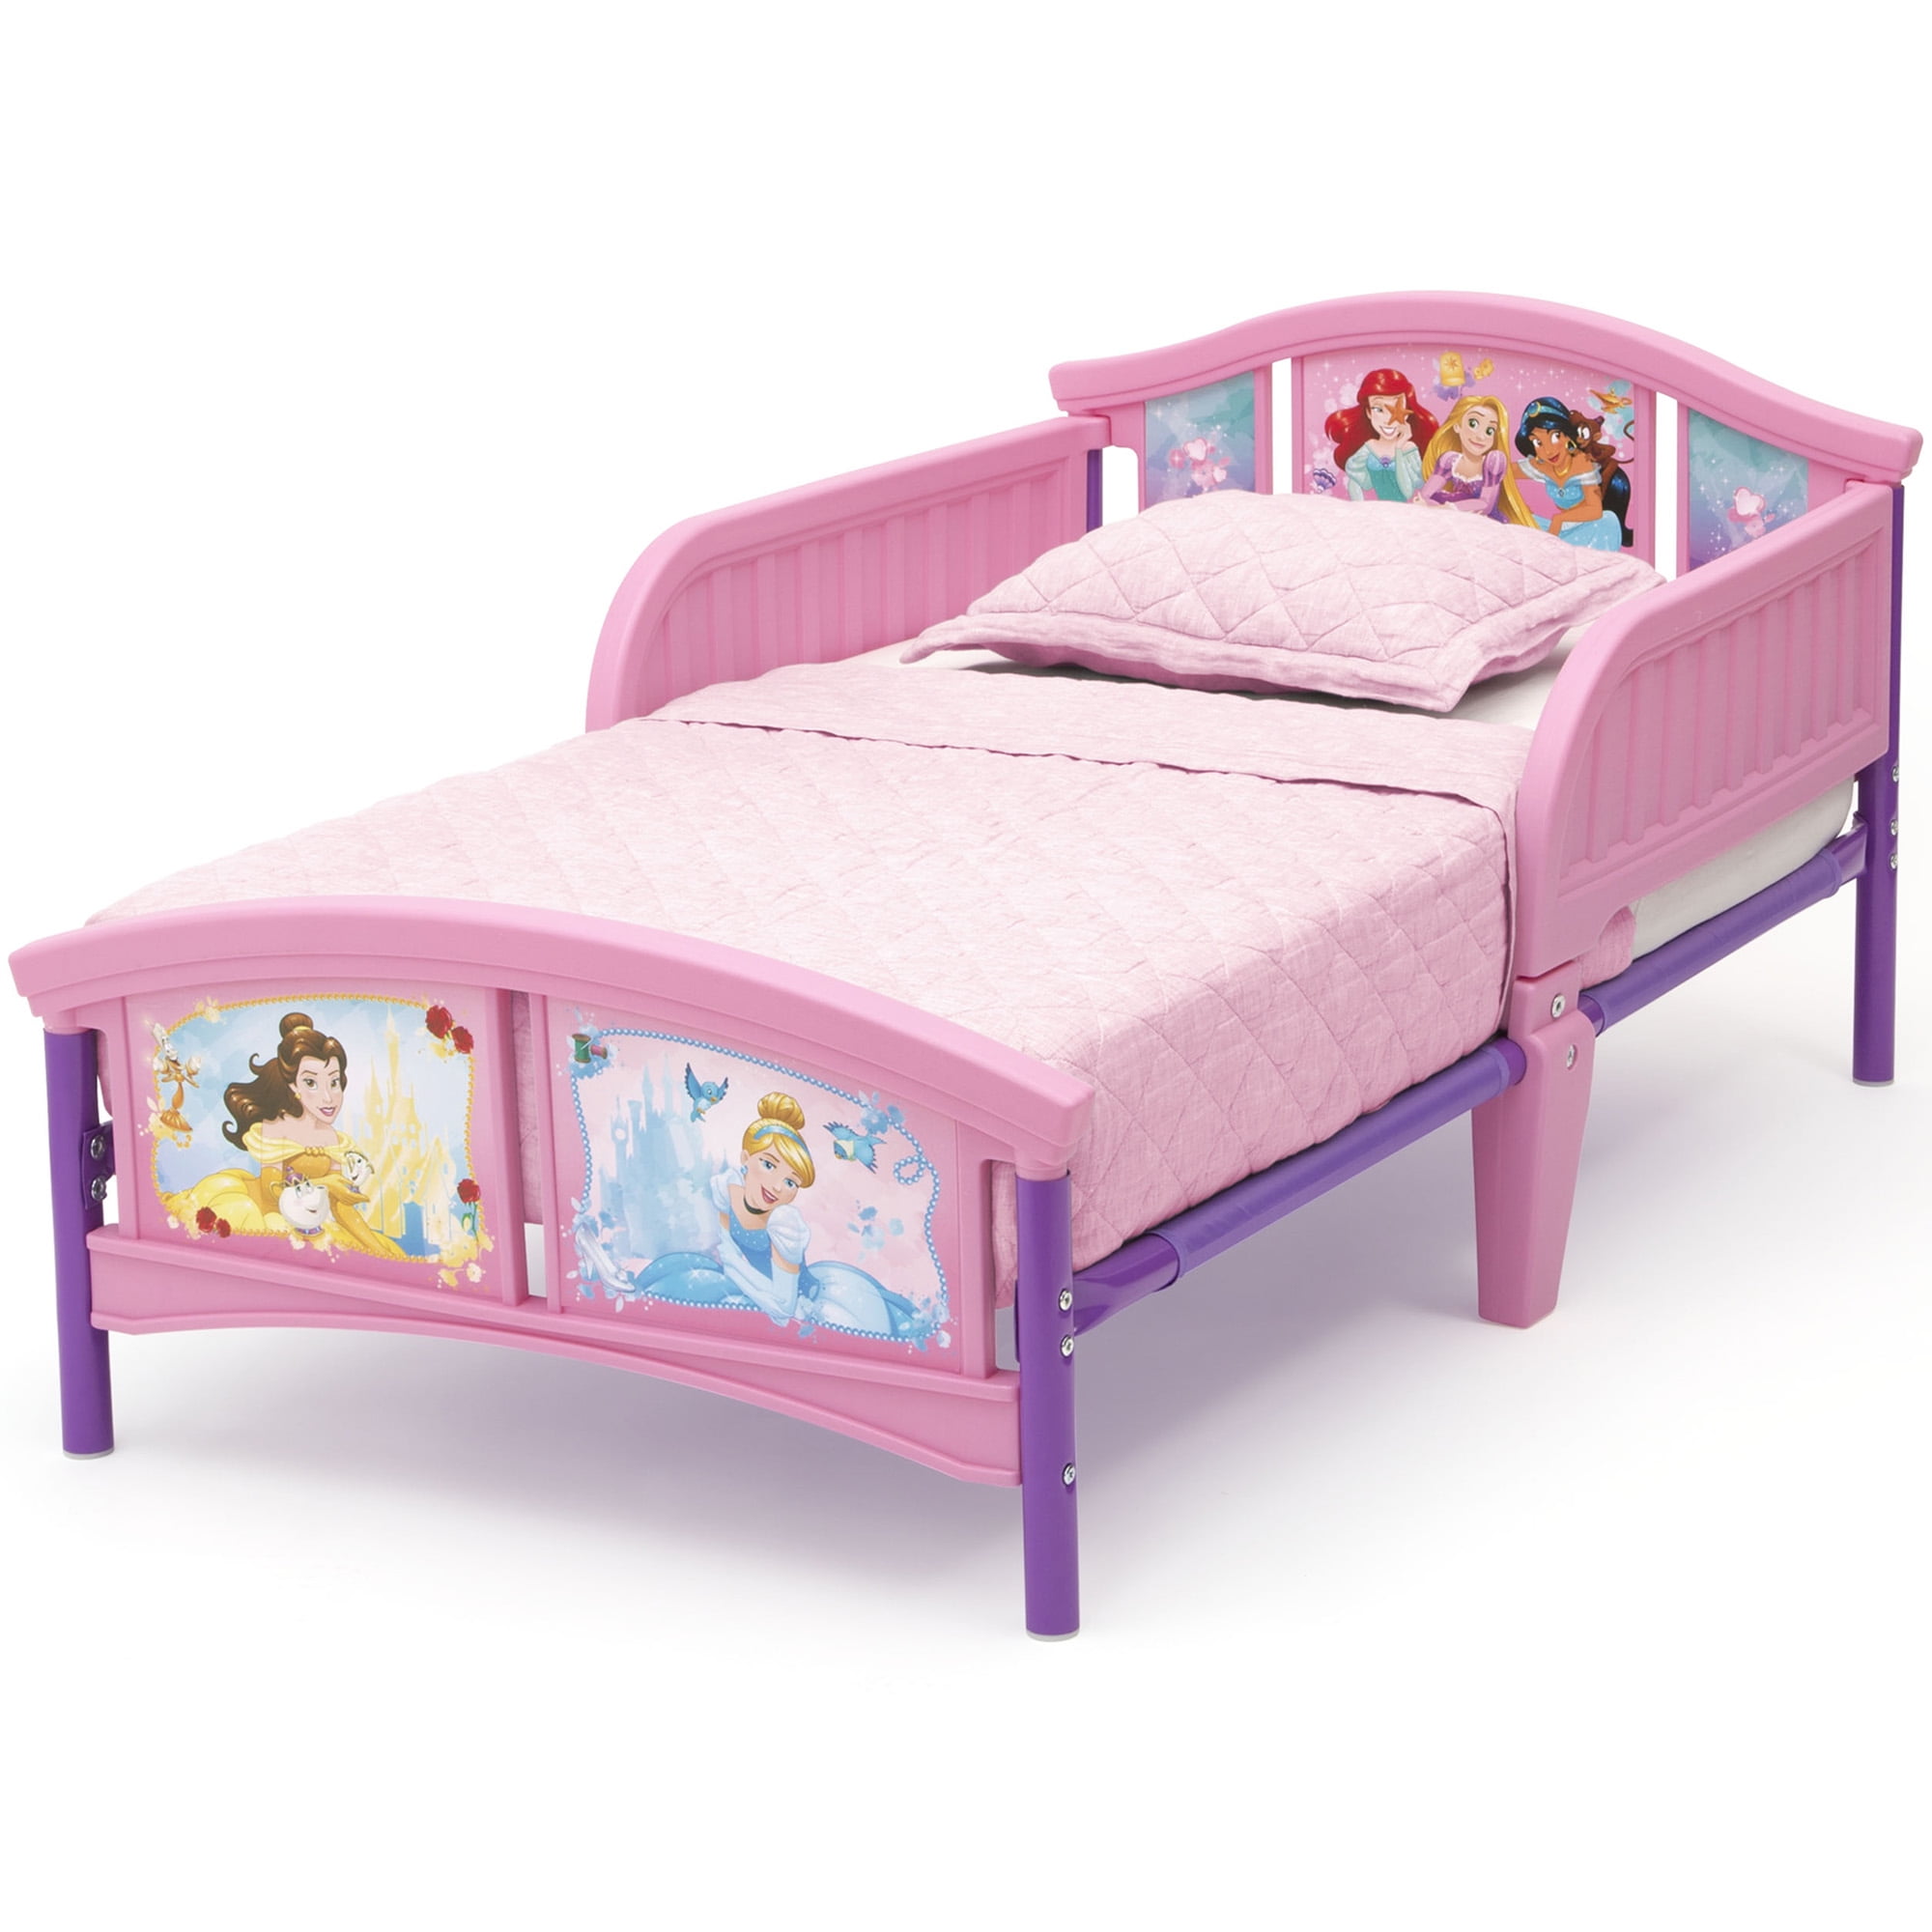 cheap childrens beds with mattress